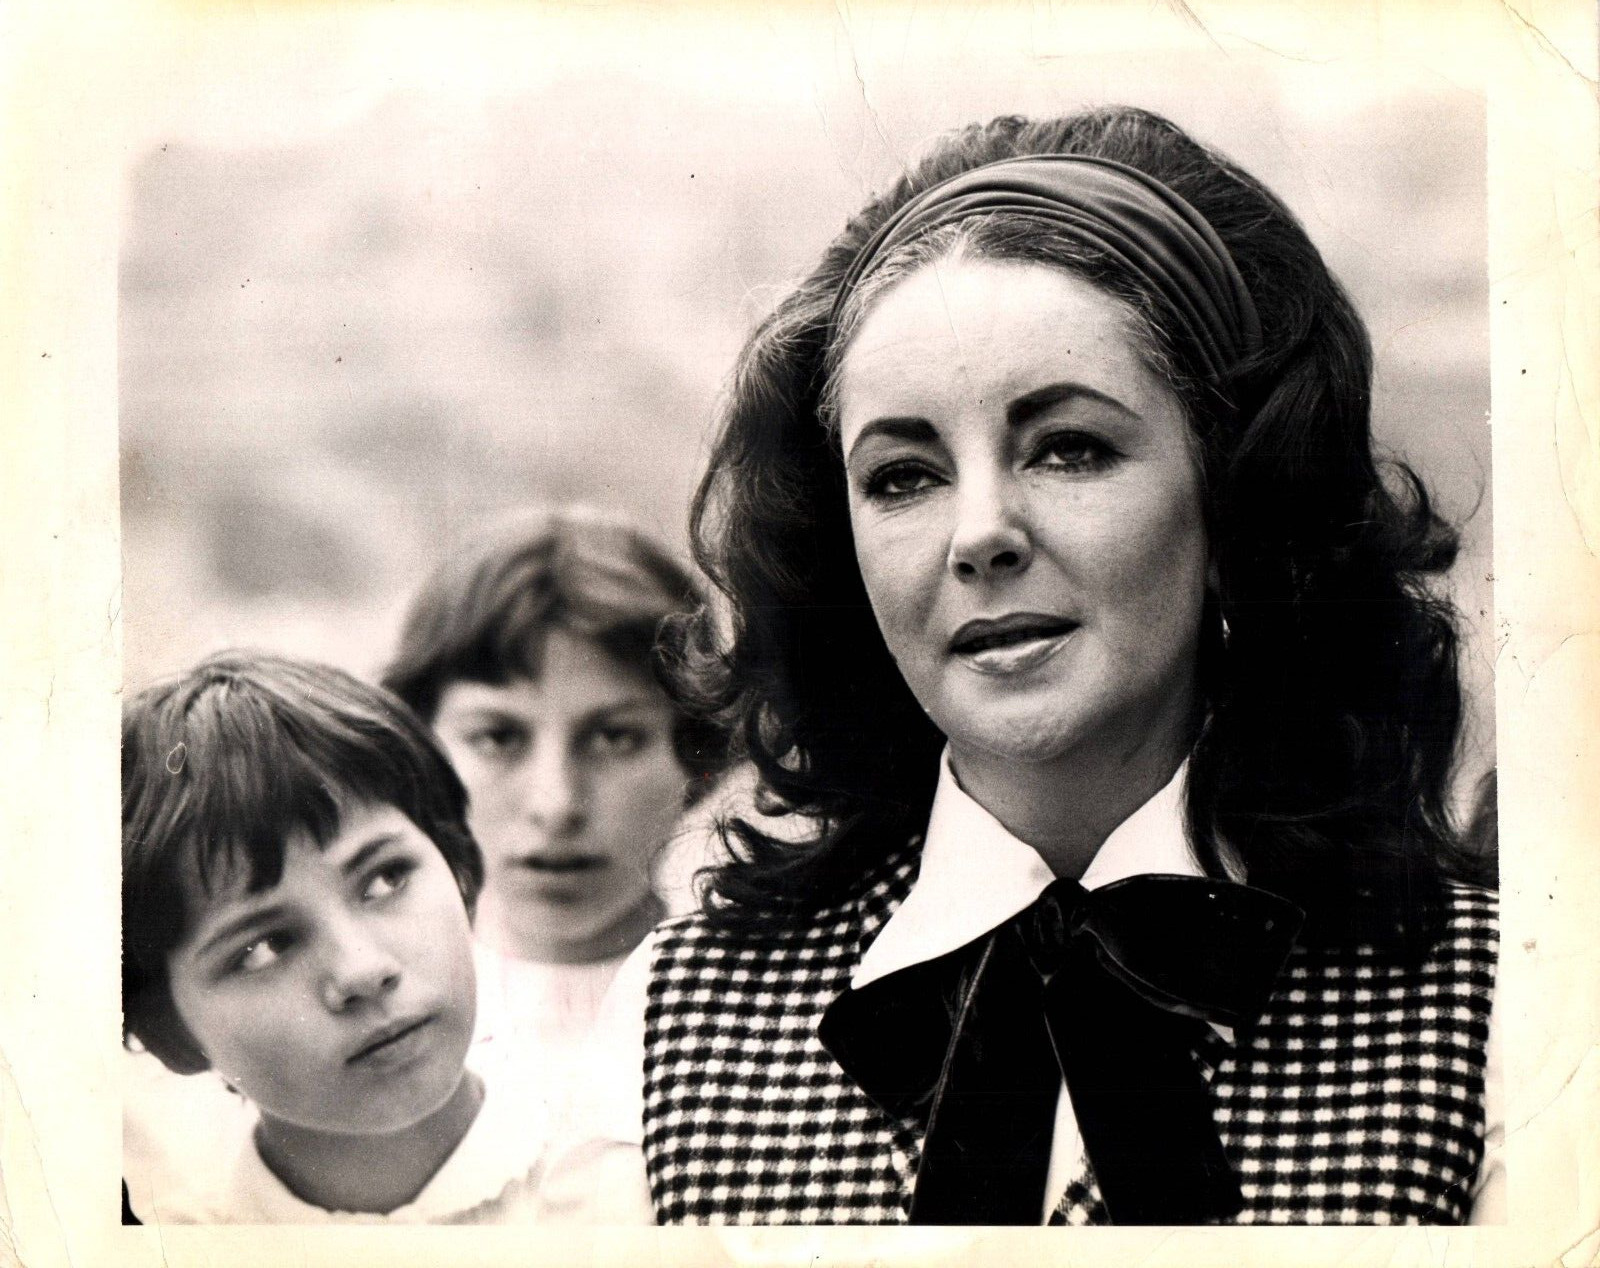 HOLLYWOOD BEAUTY ELIZABETH TAYLOR STYLISH POSE STUNNING PORTRAIT 1972 Photo C35